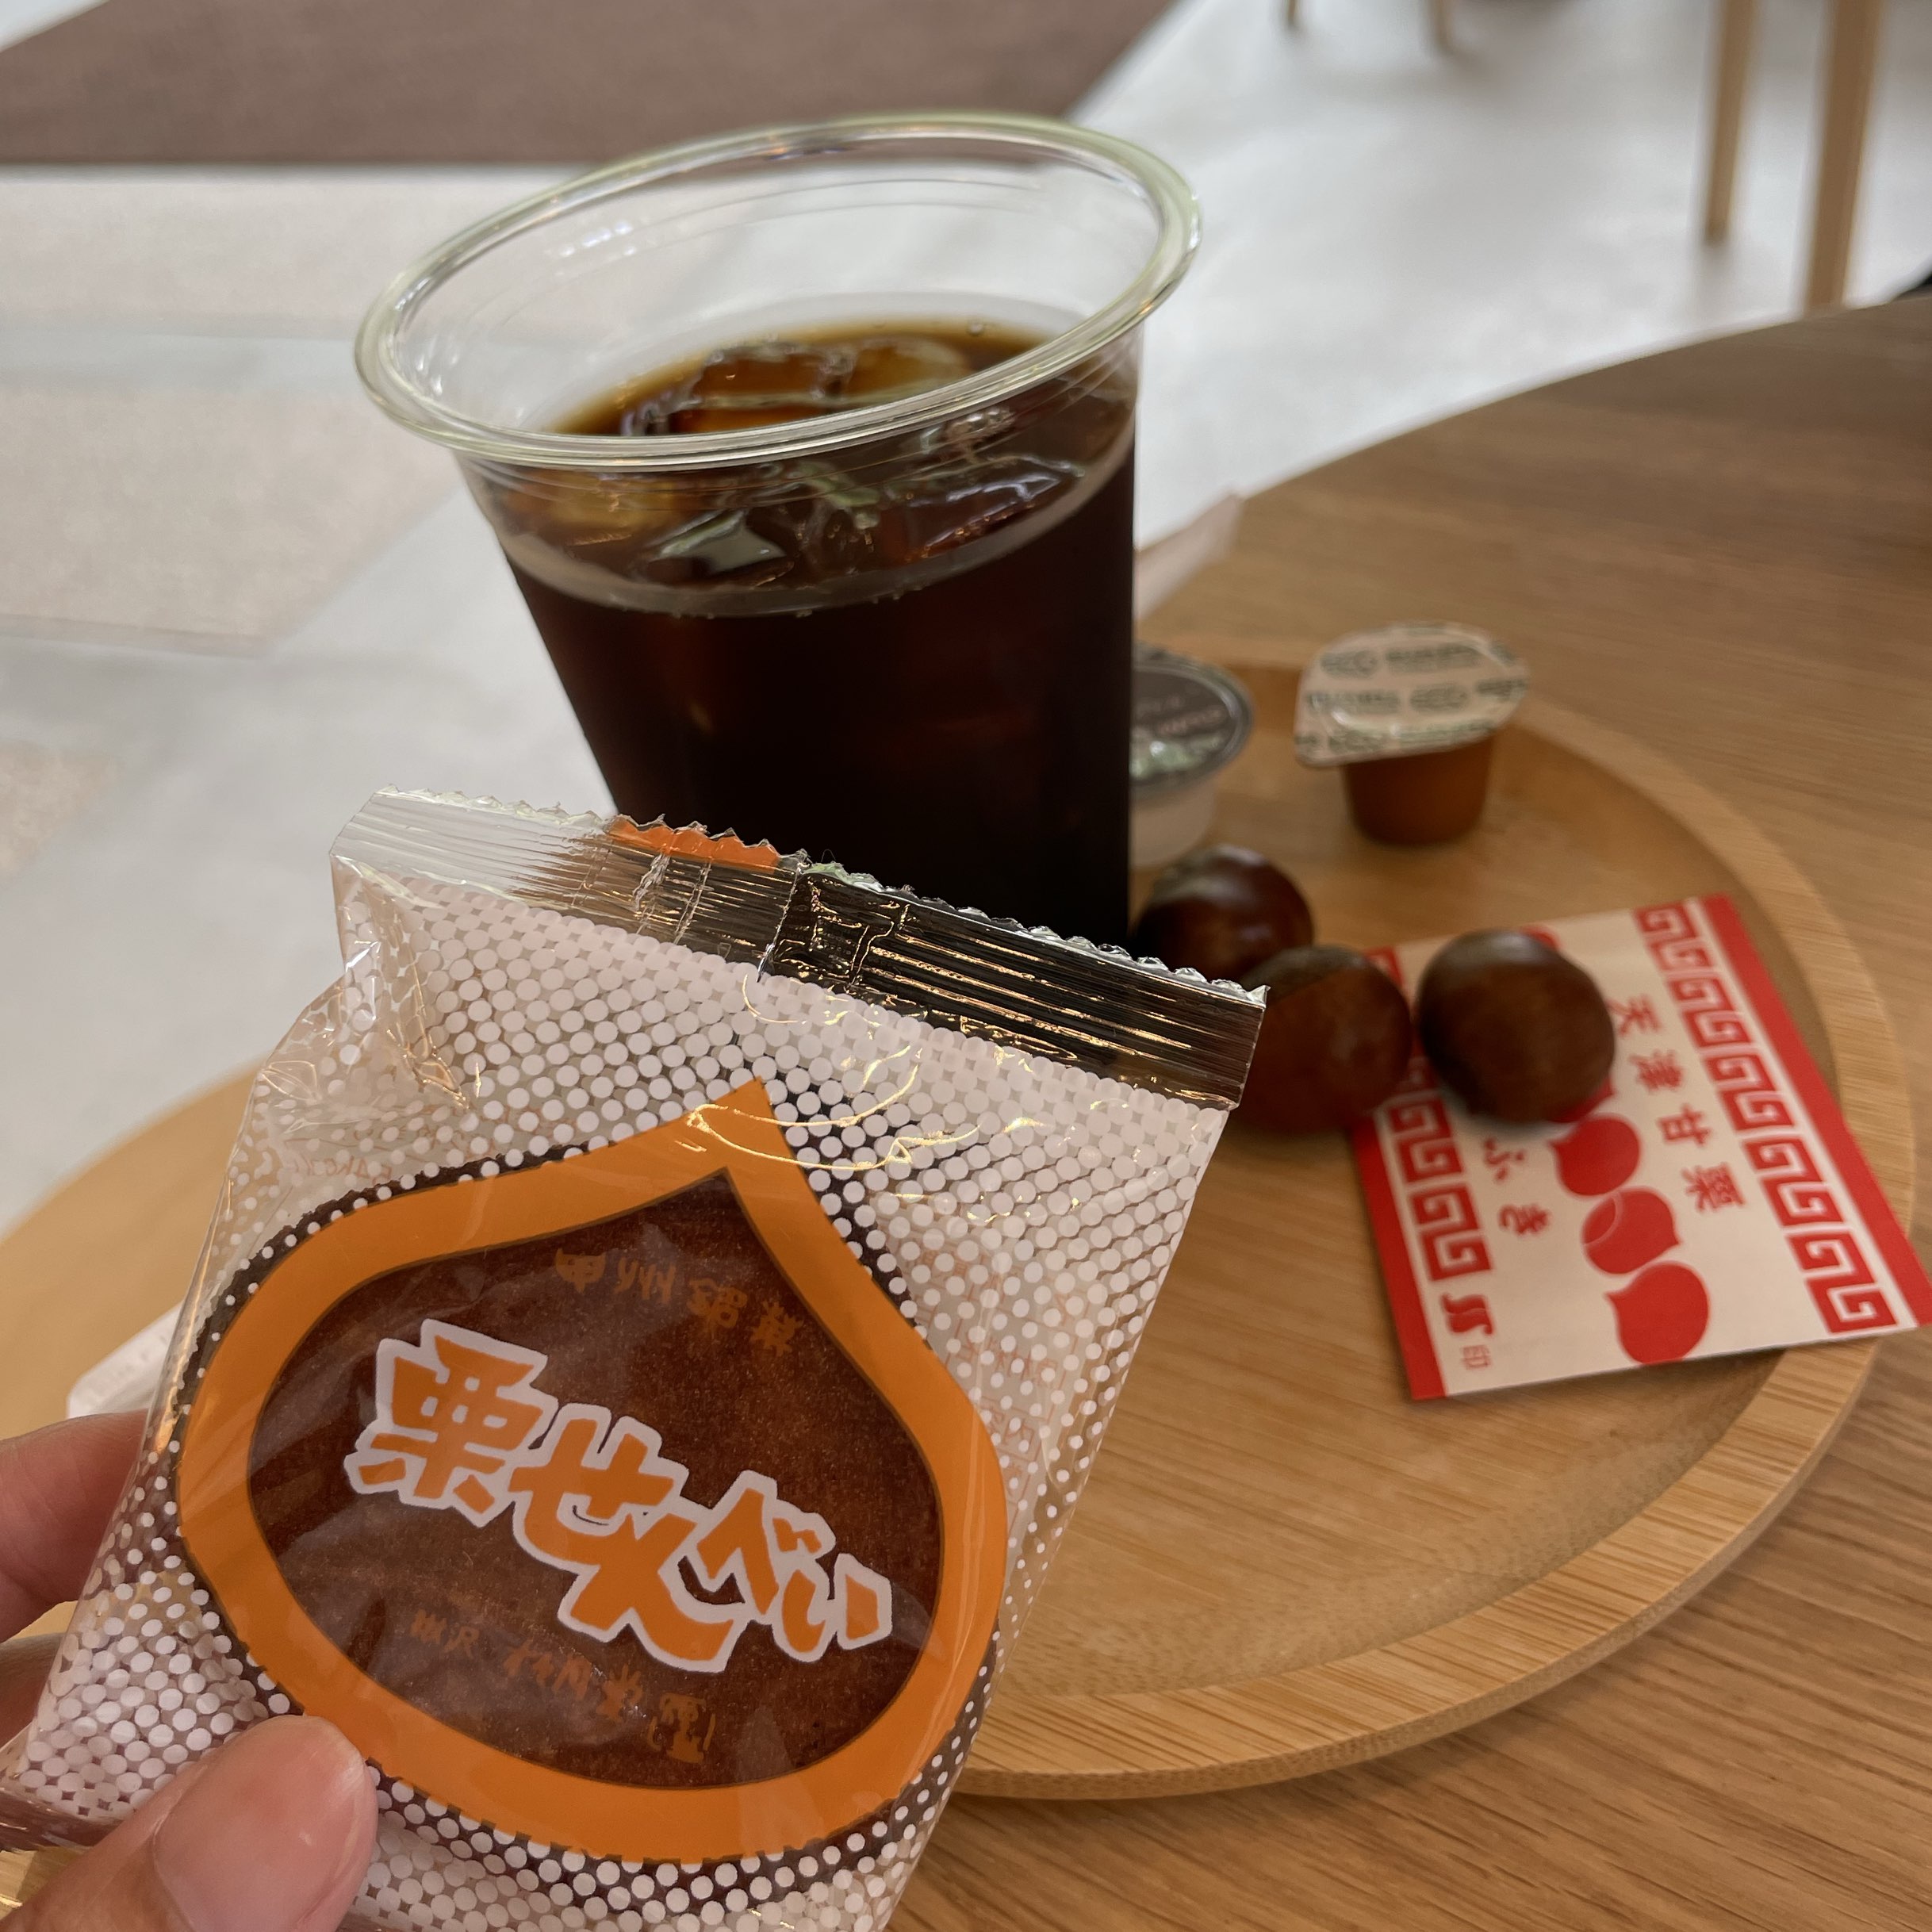 【大阪府】栗子土特产和甜点店!